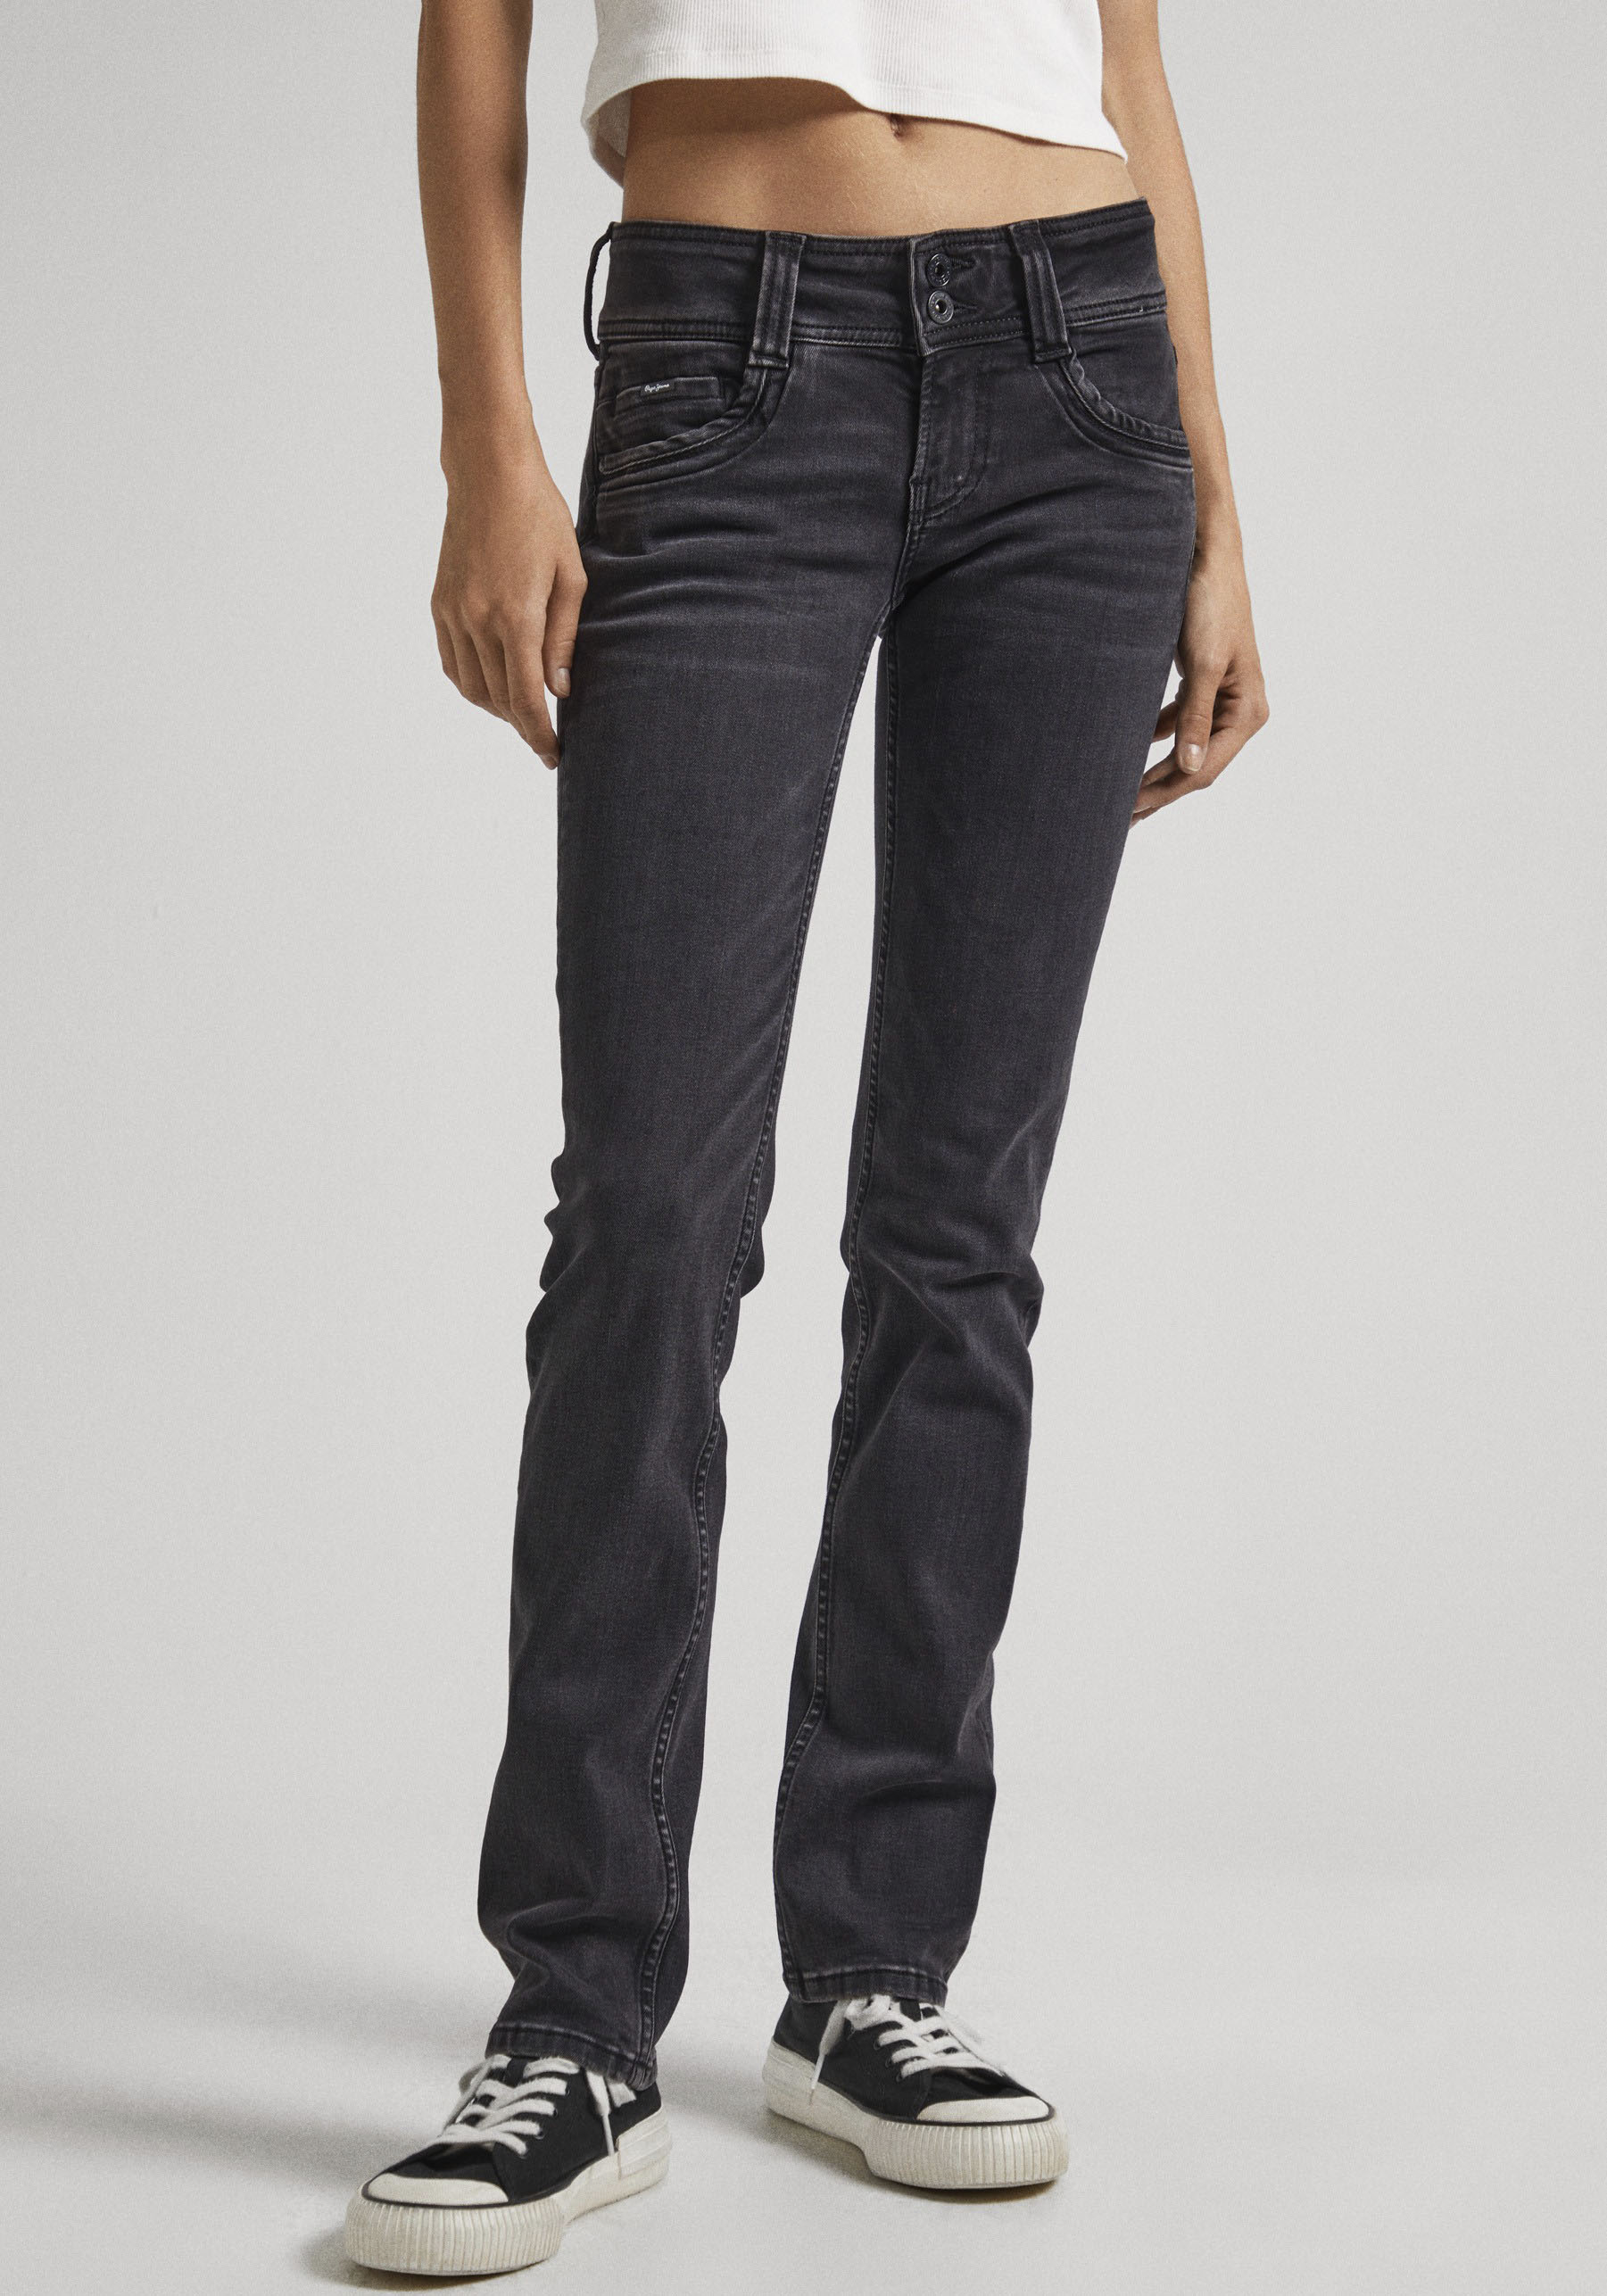 Jeans Outlet Angebote günstige BAUR & Pepe %% | SALE